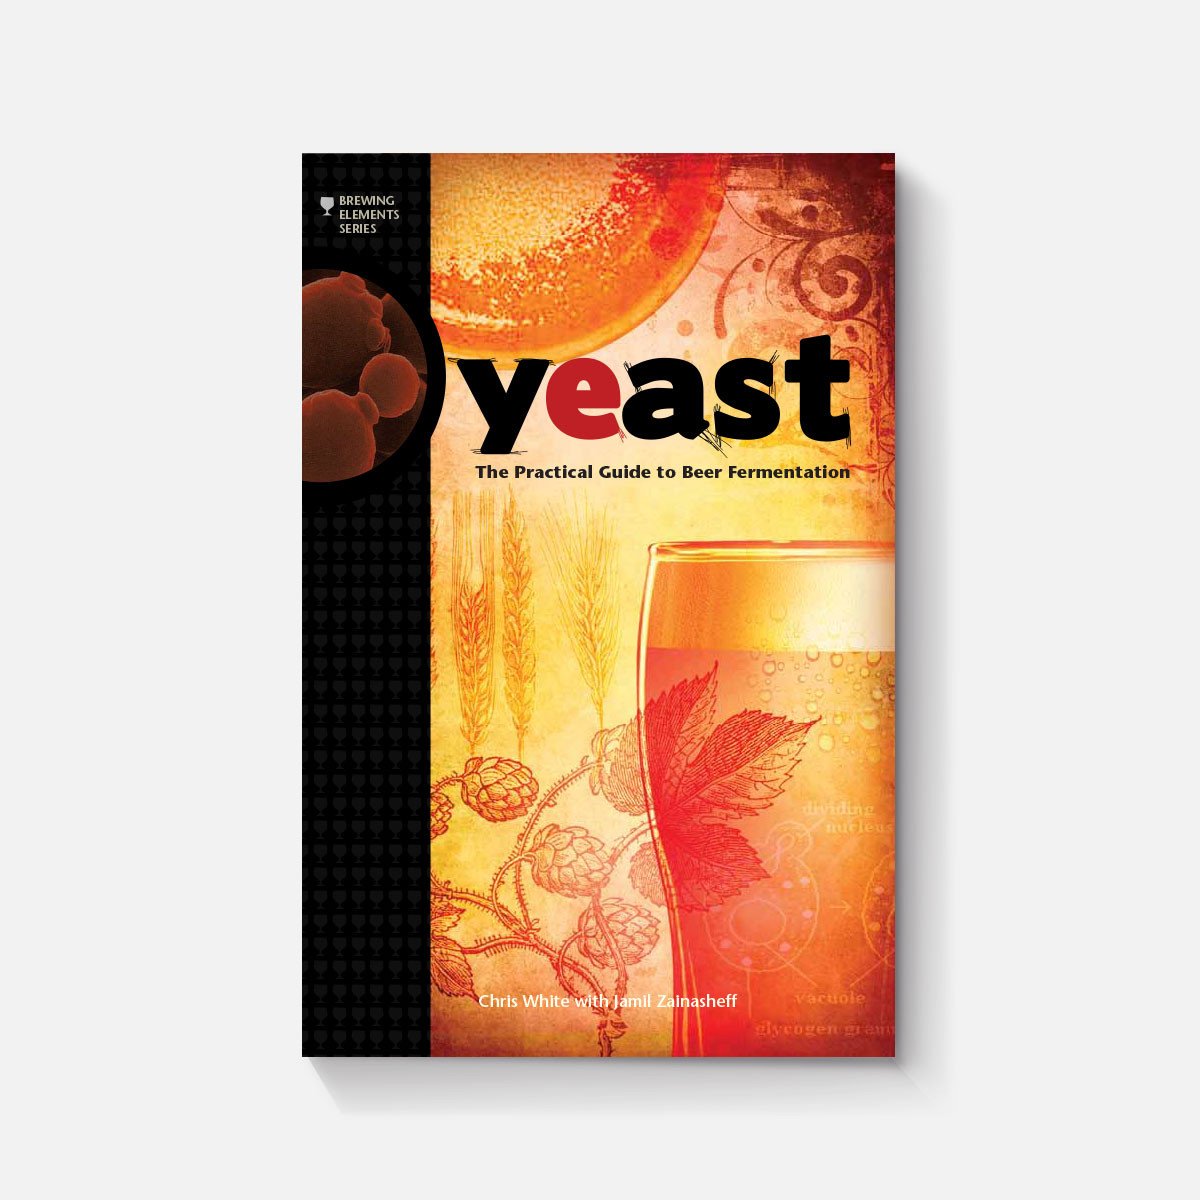 Yeast (White & Zainasheff)